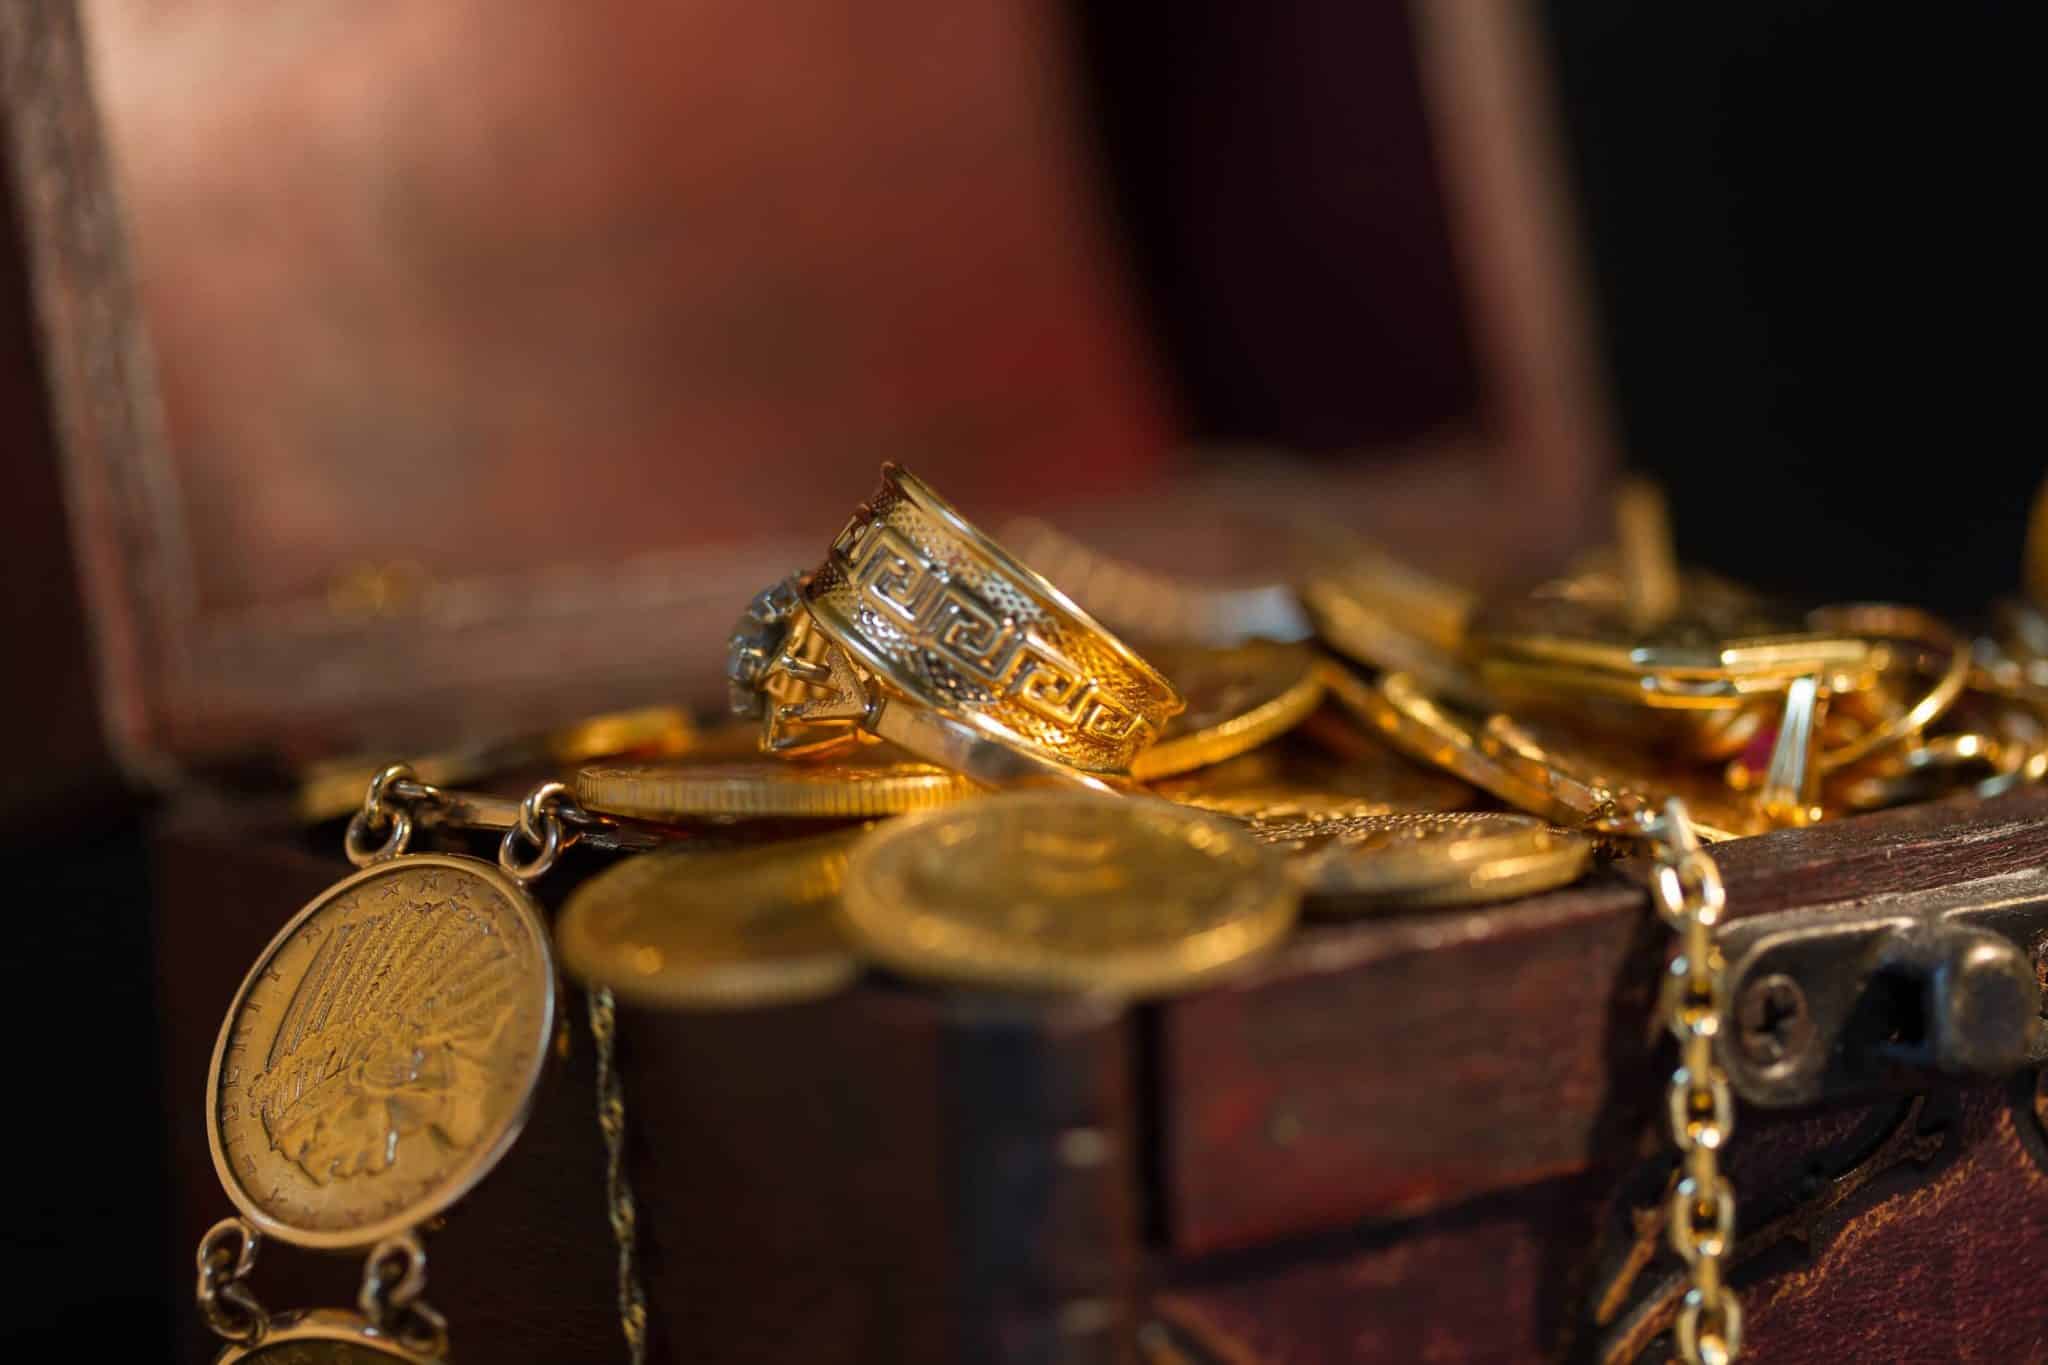 Vendez de vieilles pièces or en Suisse. Évaluation gratuite de pièces en or  à Lausanne, Genève, Nyon, Montreux, Bâle, Zürich